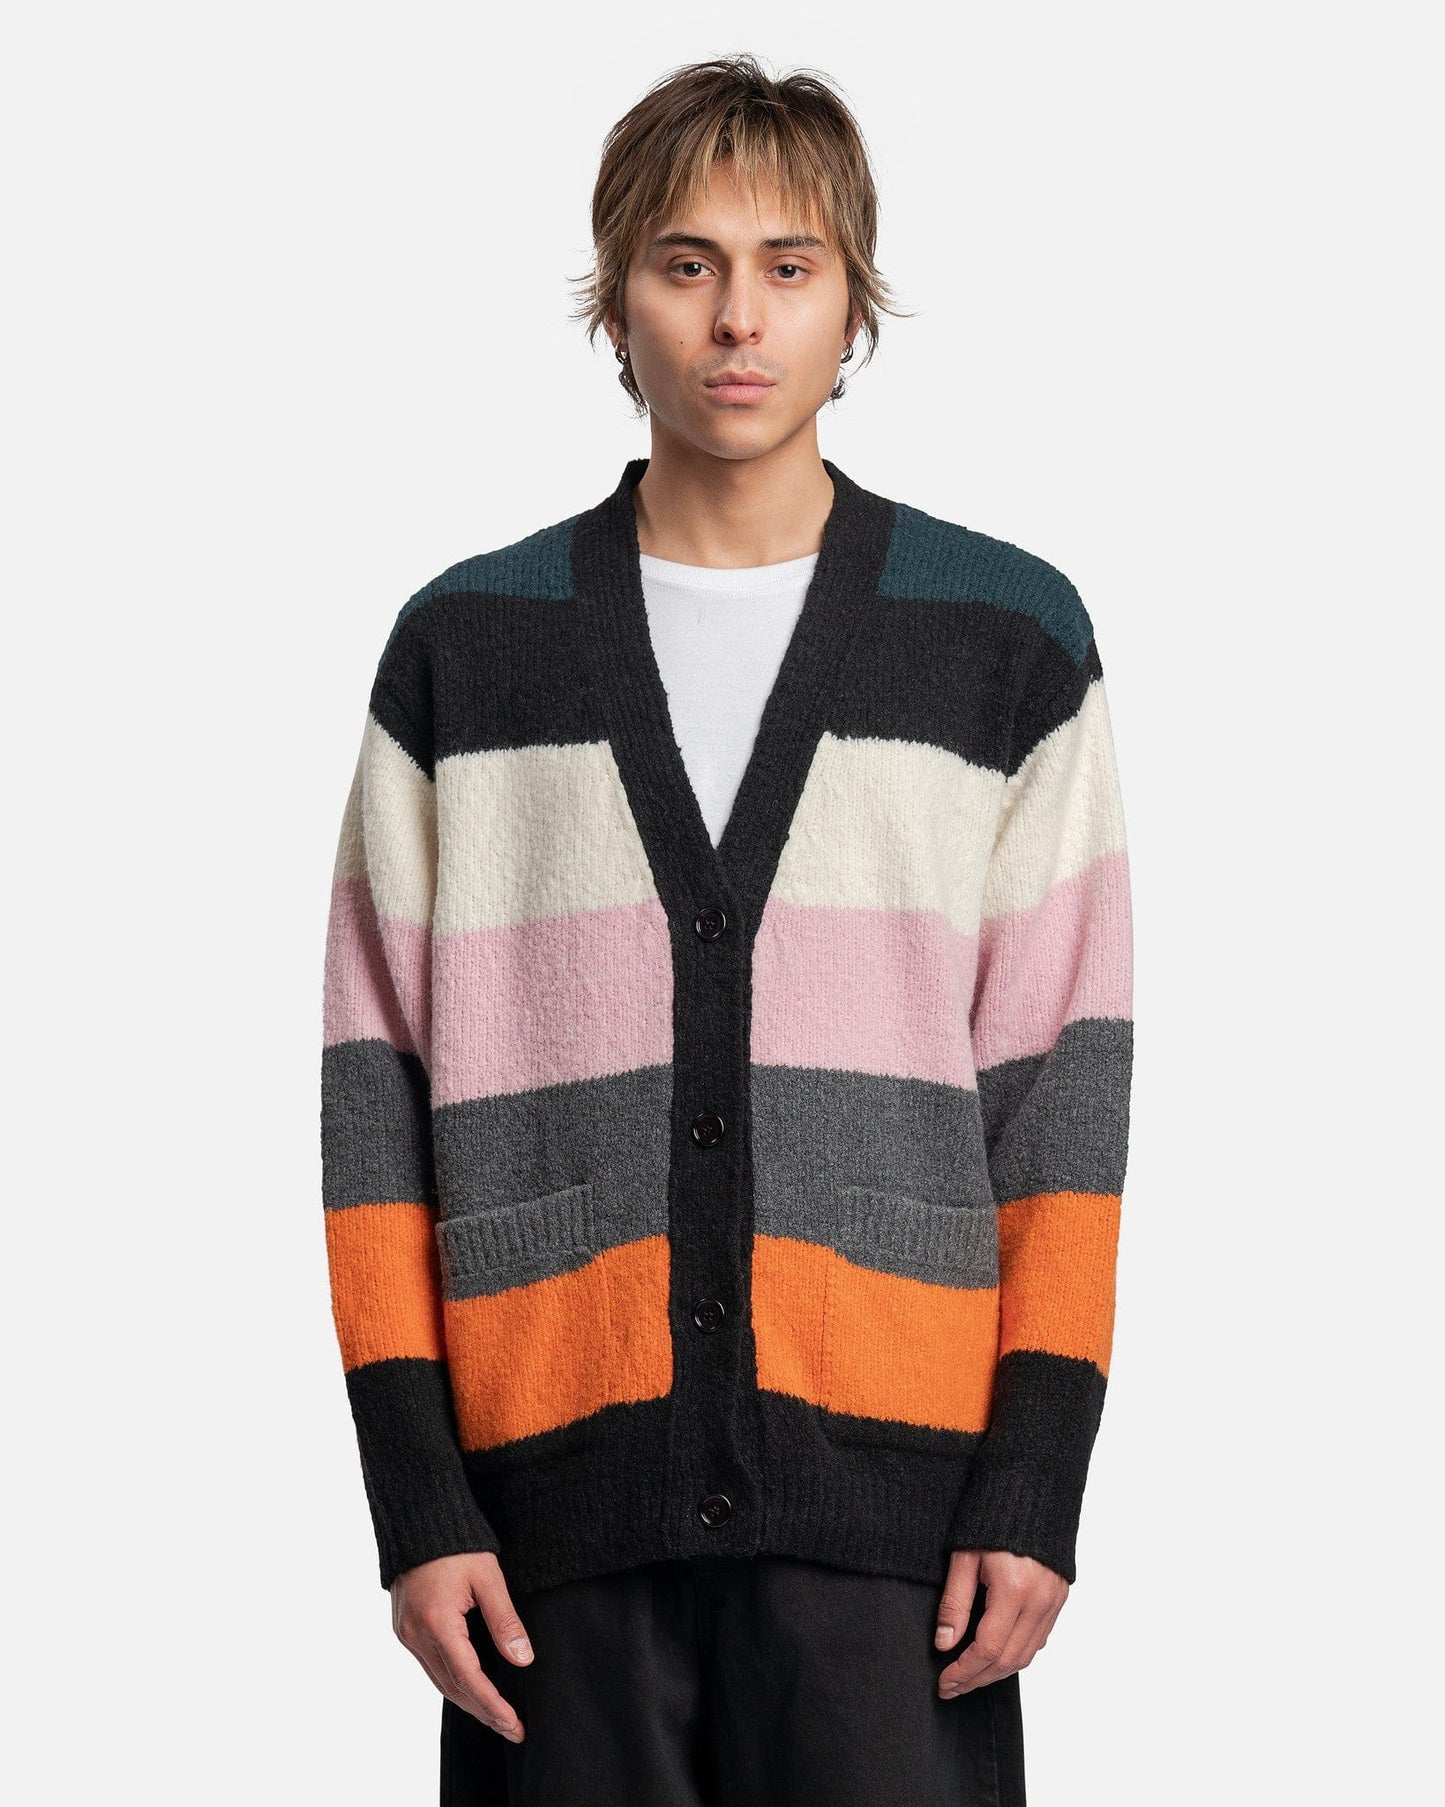 Dries Van Noten Men's Sweatshirts Naffs Cardigan in Multi